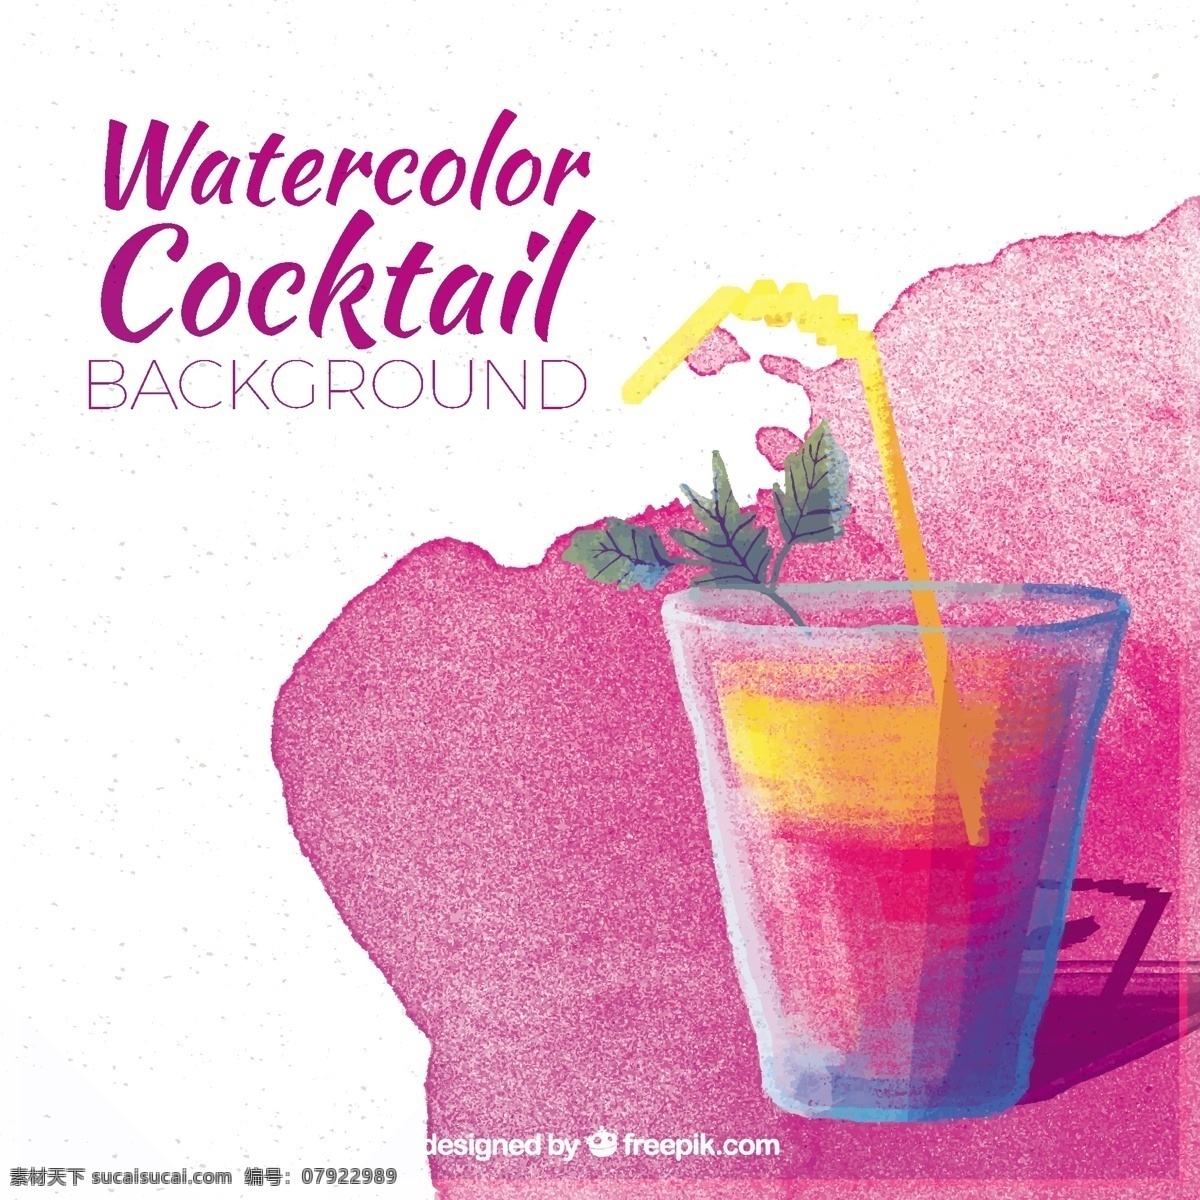 水色 夏日 鸡尾酒 背景 水 夏季 粉红色 水果 颜色 热带 粉红色背景 果汁 水彩画 饮料 背景设计 酒精 美味